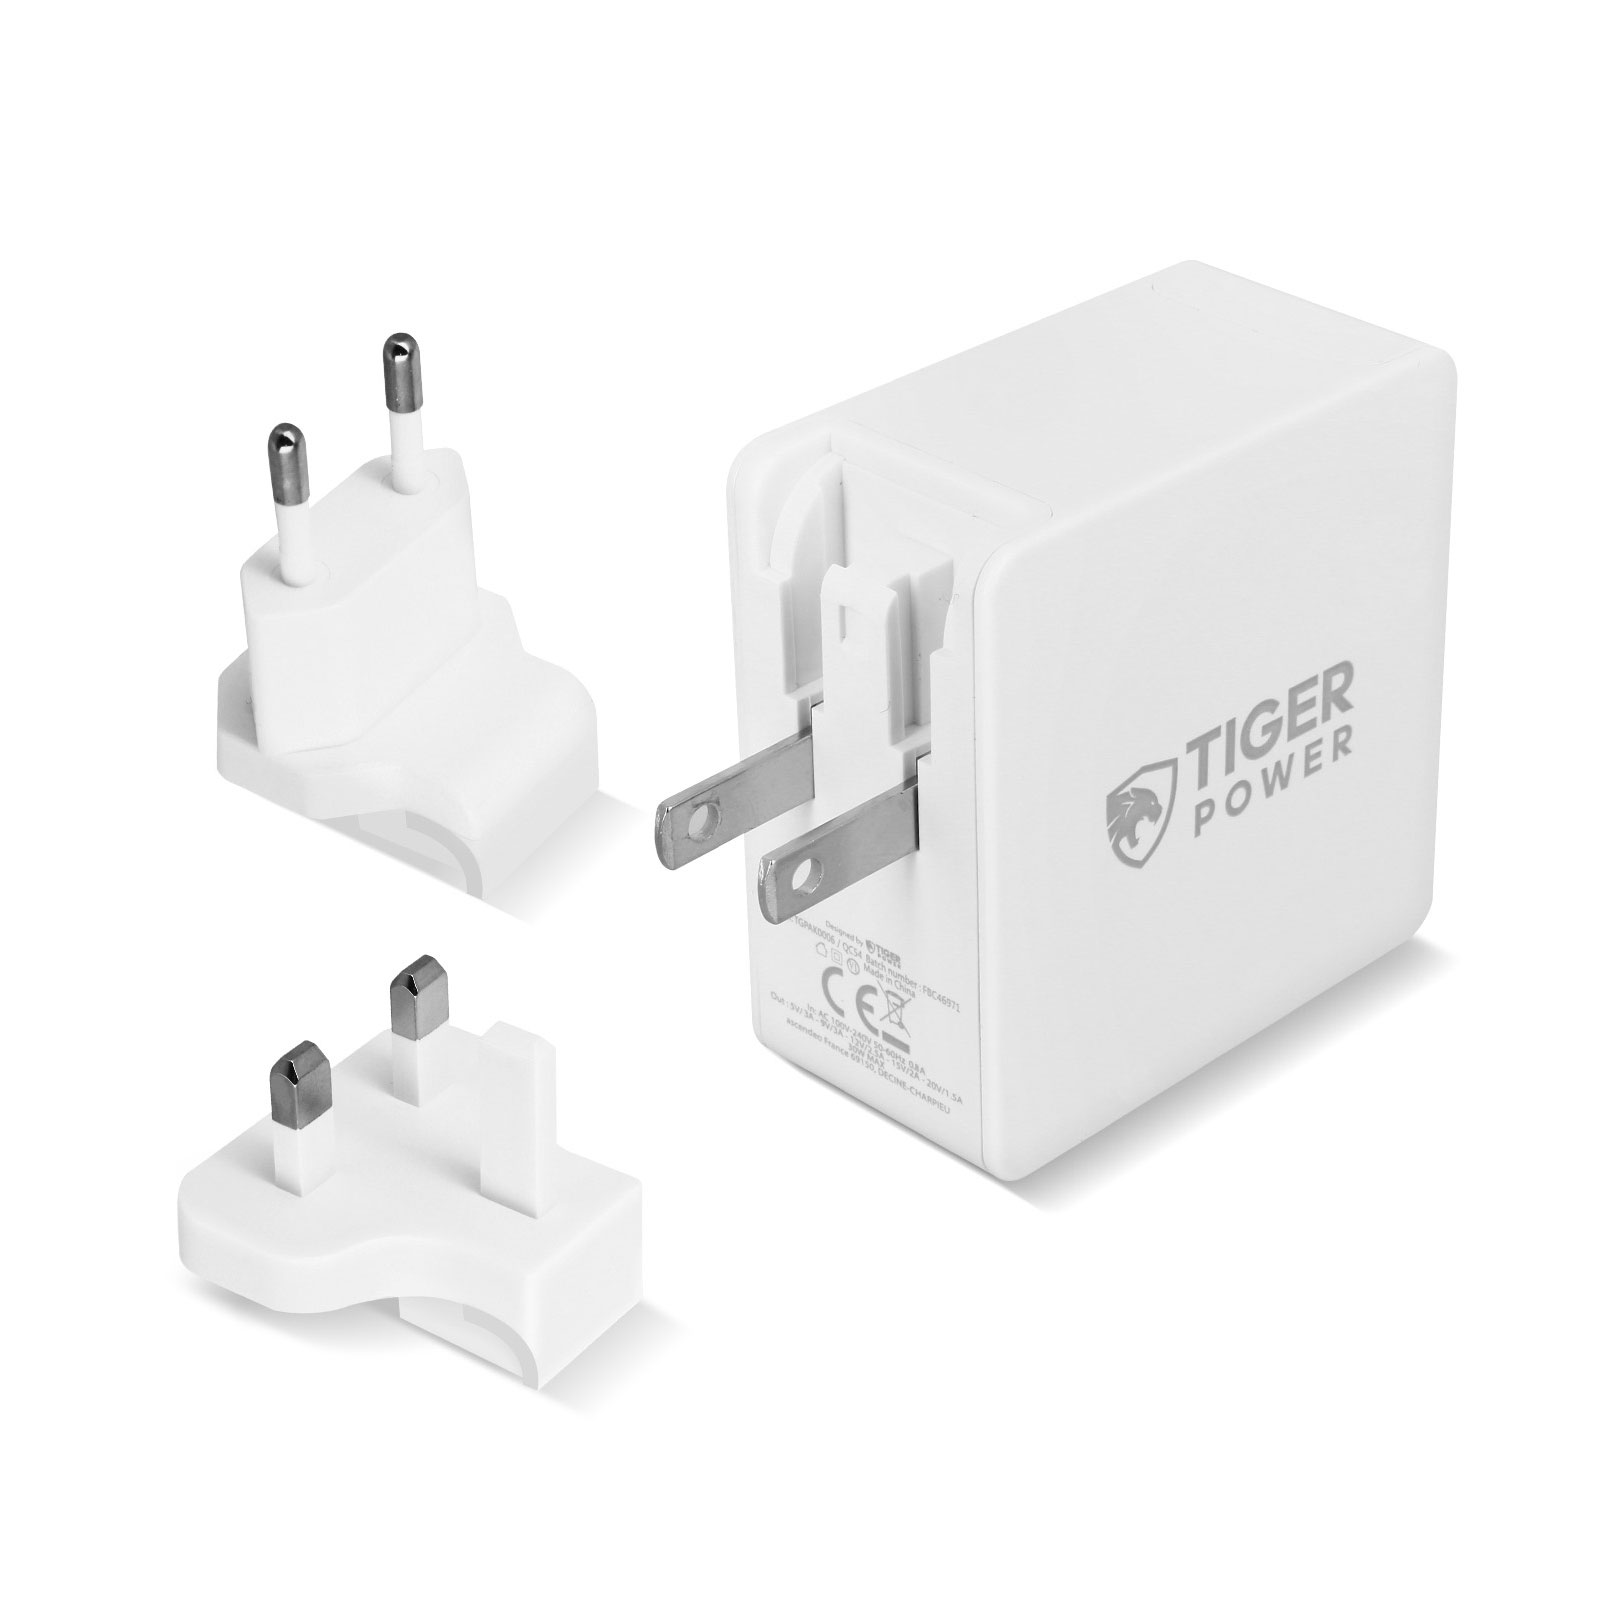 Pour Google 30W Chargeur USB-C US/EU Plug Charge Rapide Adaptateur